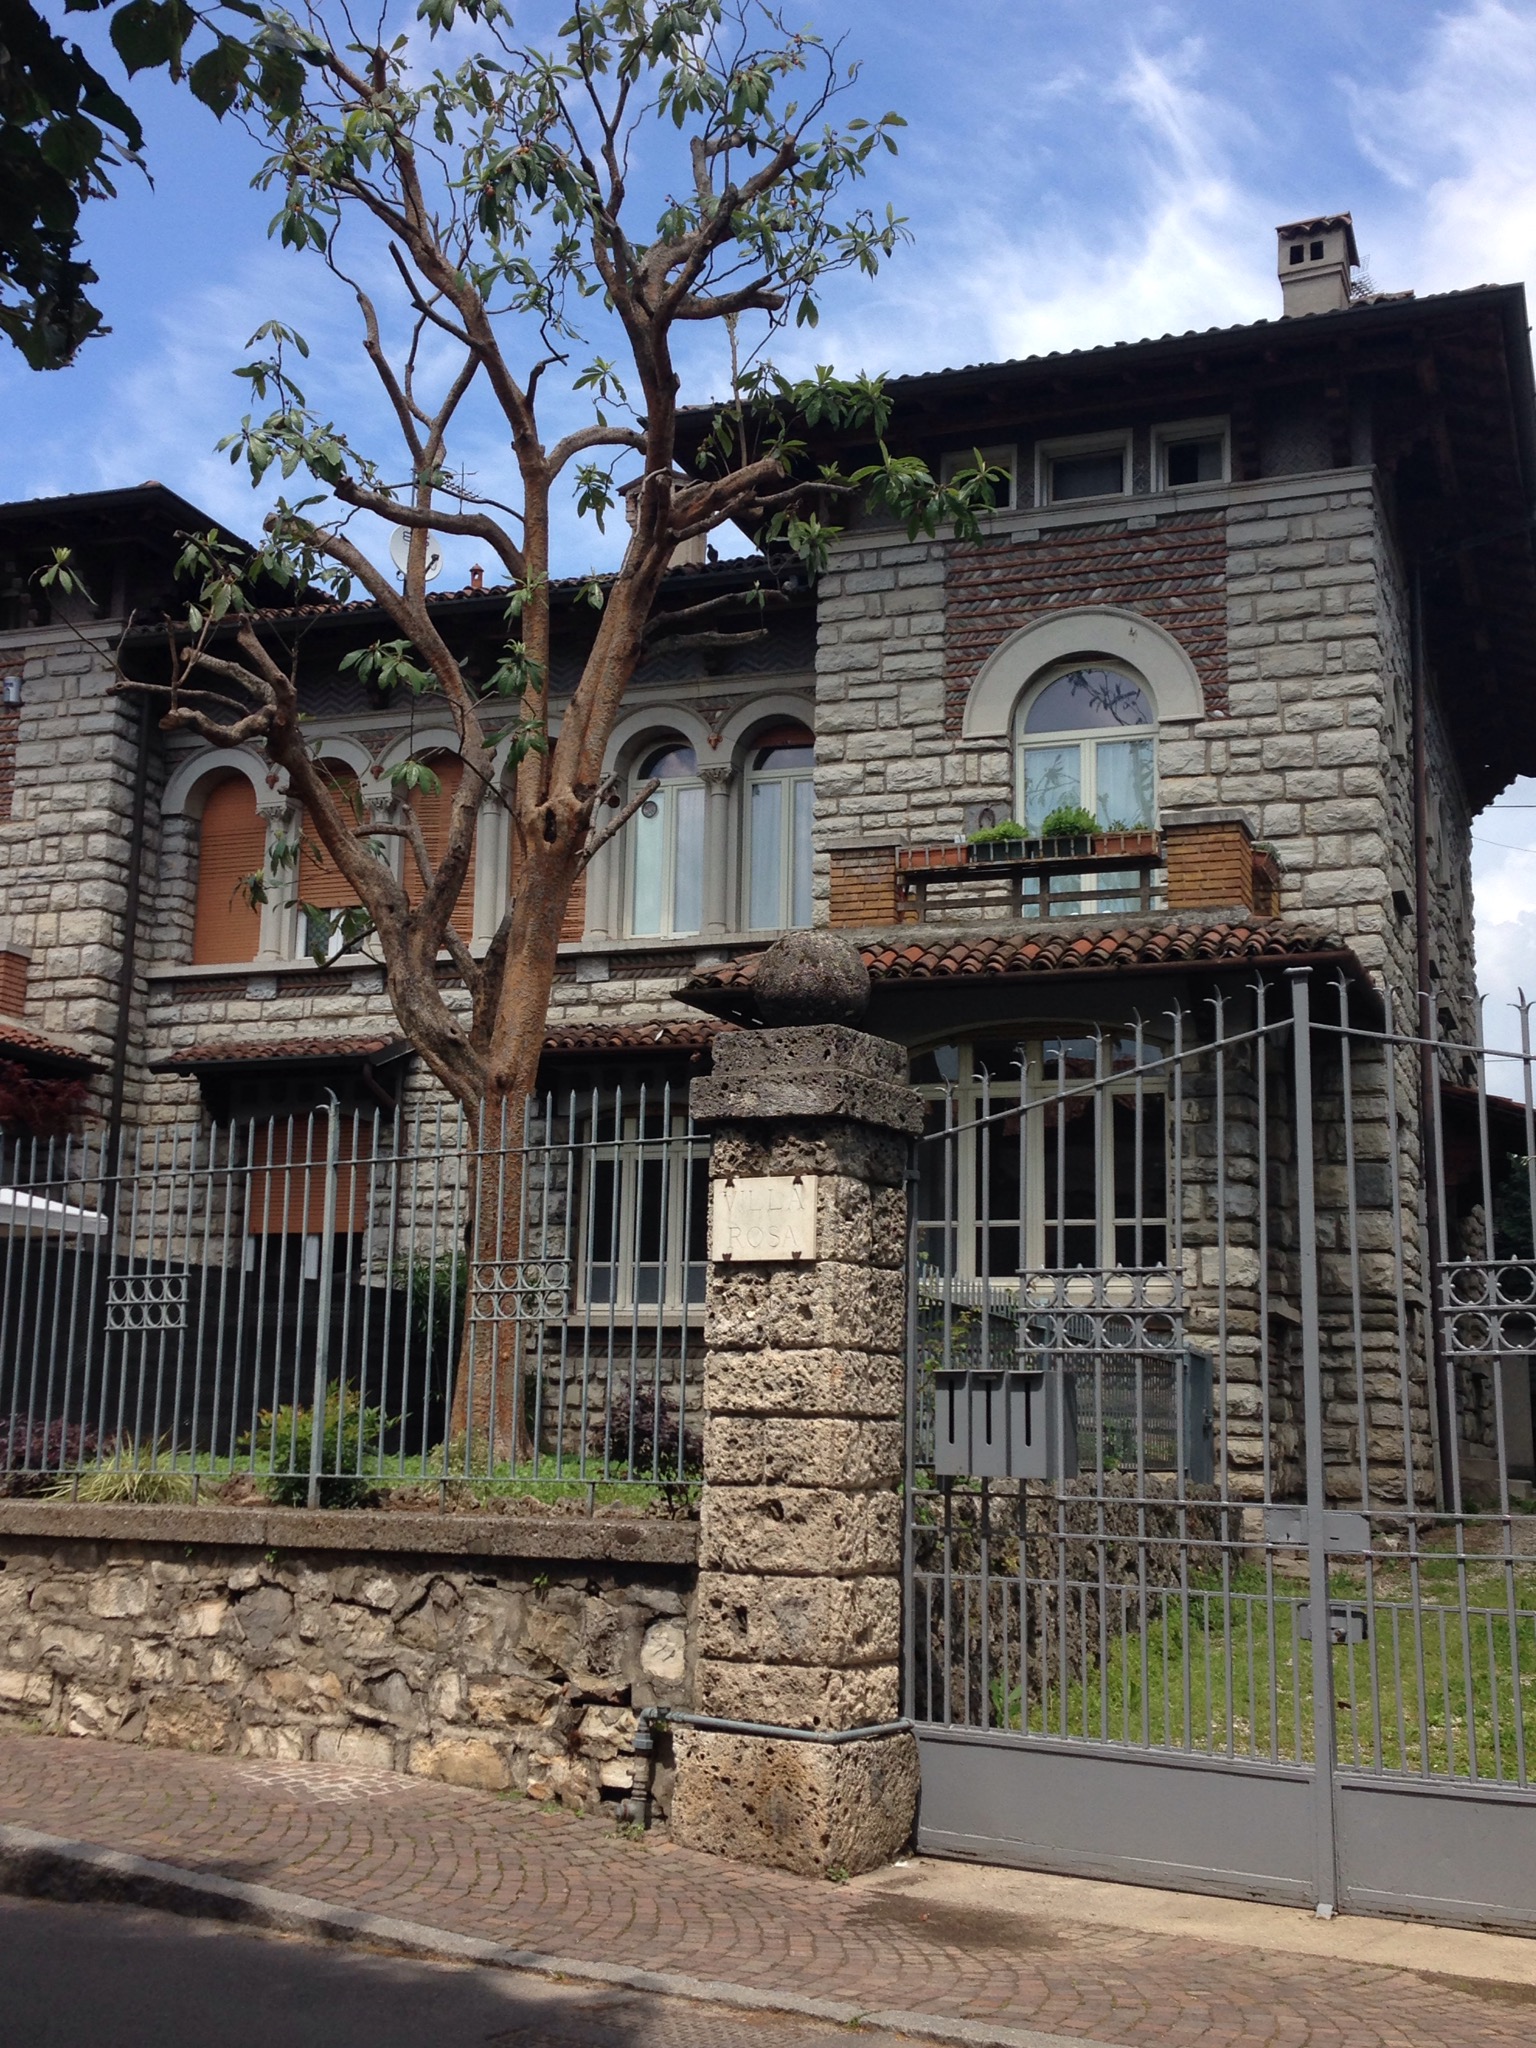 Villa Rosa ad Iseo: villa liberty con giardino - Ville in affitto a Iseo,  Lombardia, Italia - Airbnb